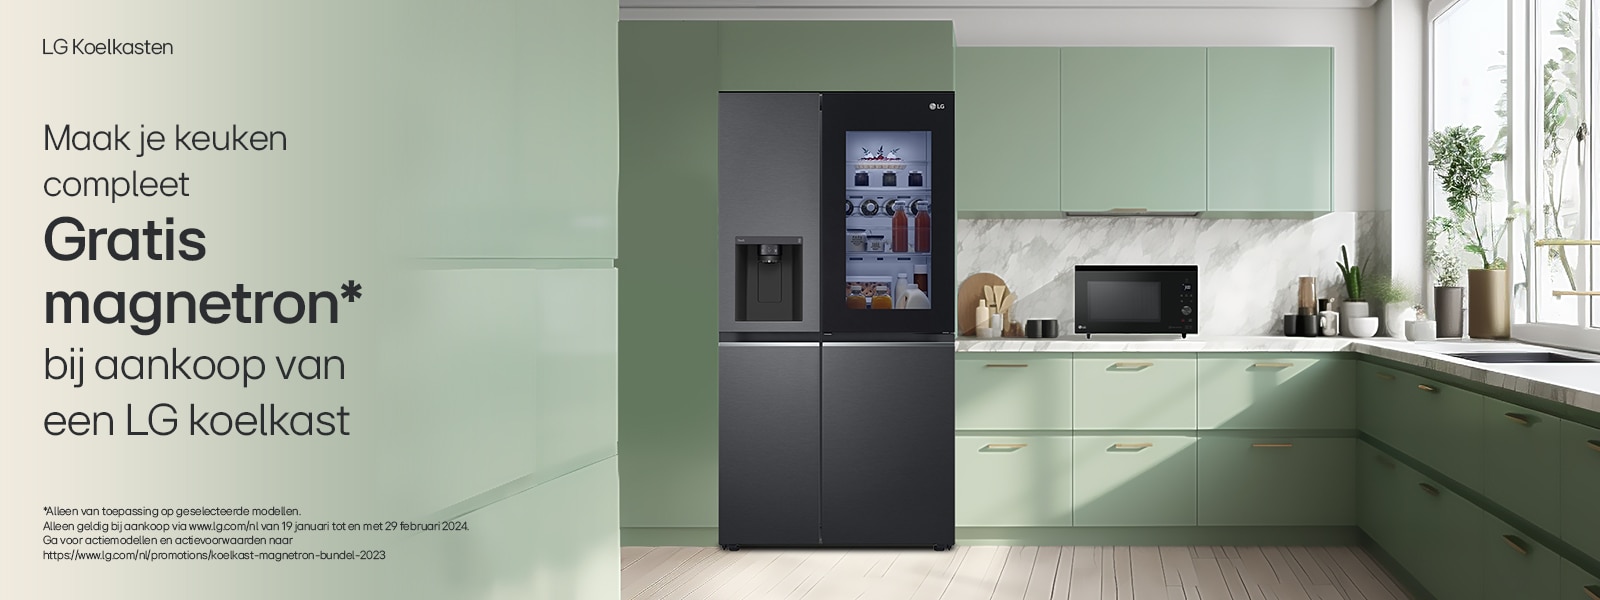 LG Amerikaanse koelkast en magnetron in een groen getinte keuken